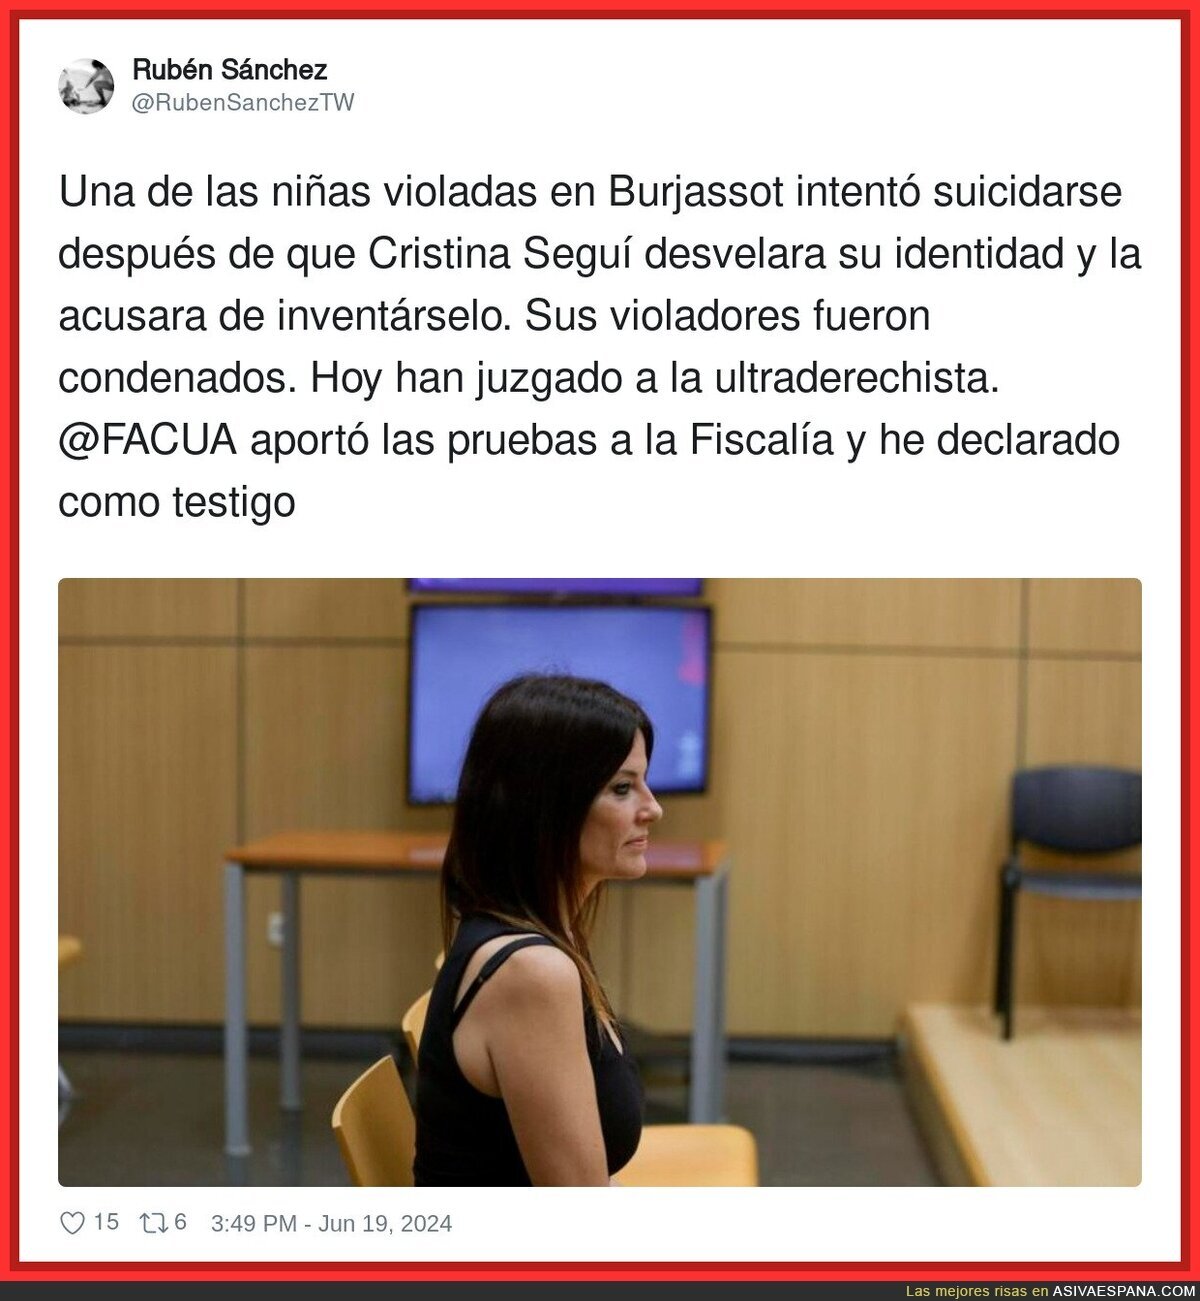 El tiempo juzgará a Cristina Seguí